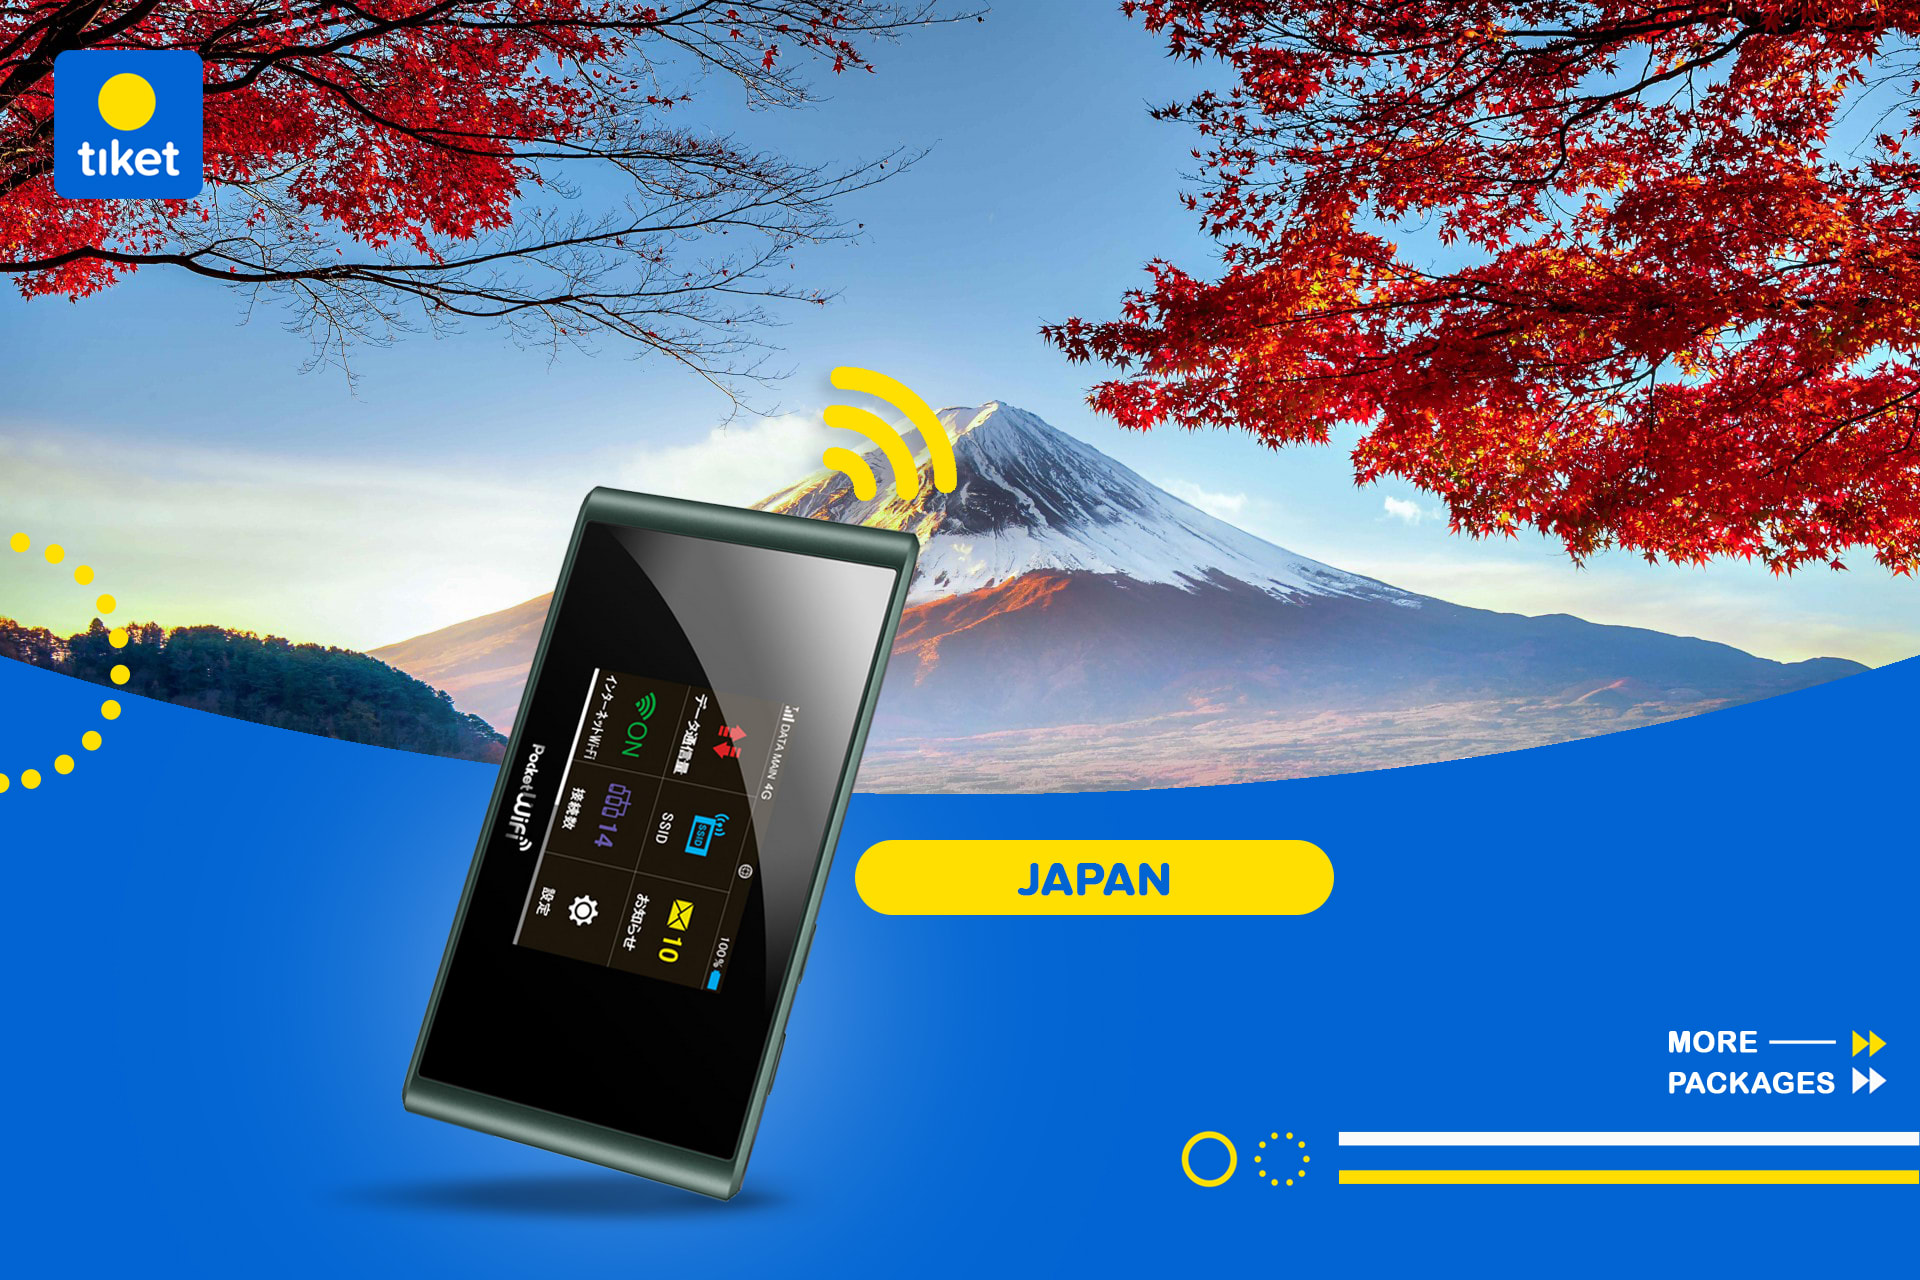 Sewa Pocket WiFi 4G Jepang (Pengambilan di Bandara Jepang) - chiyoda.jpg-backdrop